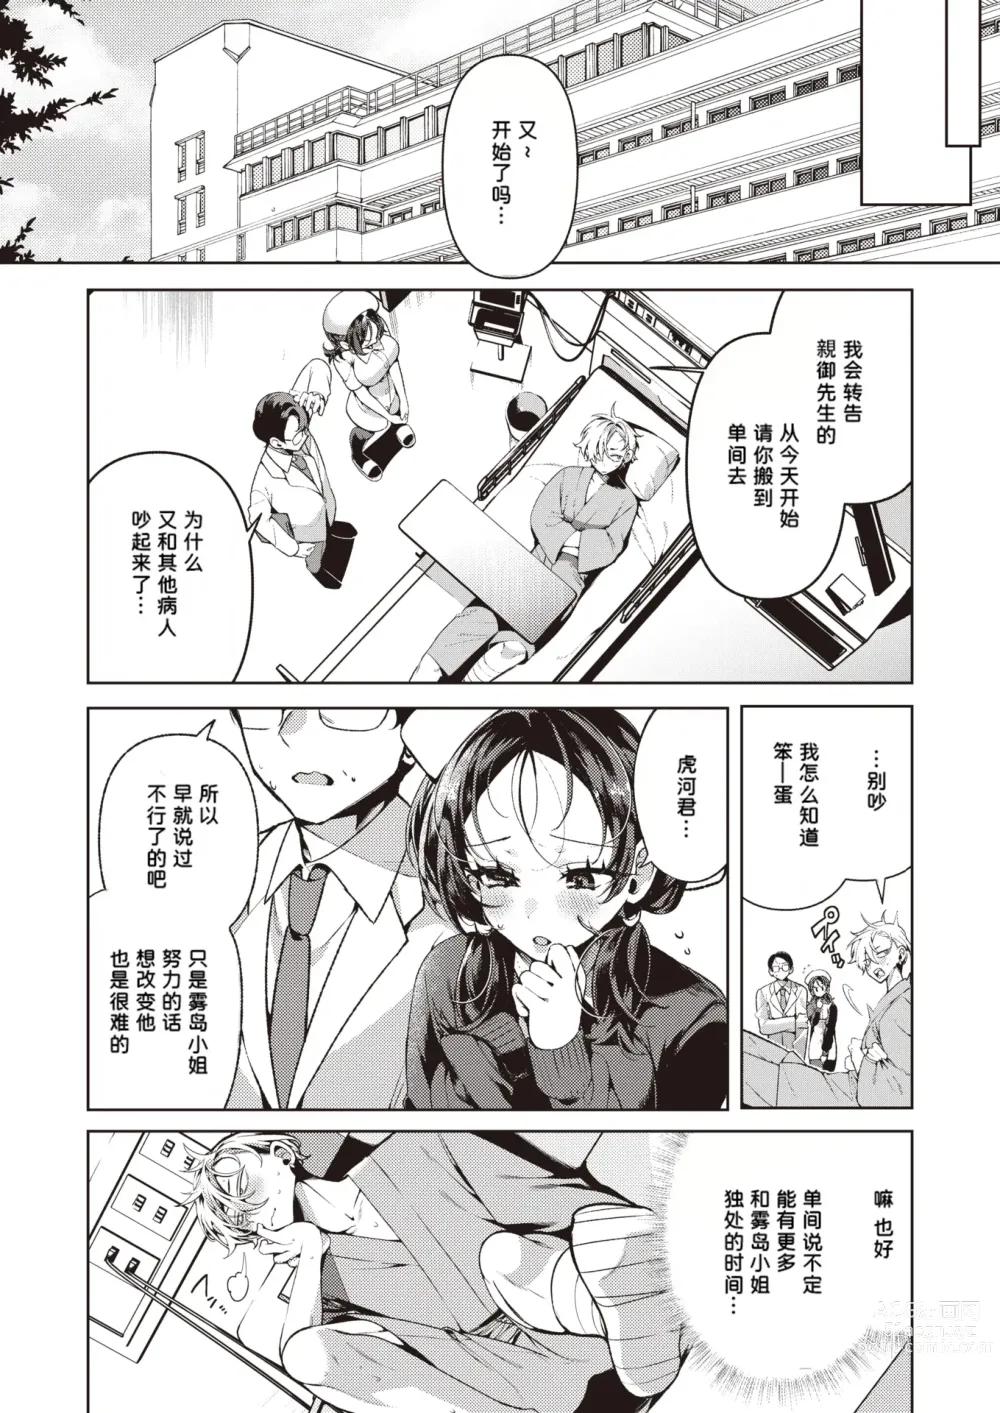 Page 5 of manga Yasashii? Nurse no Kirishima-san